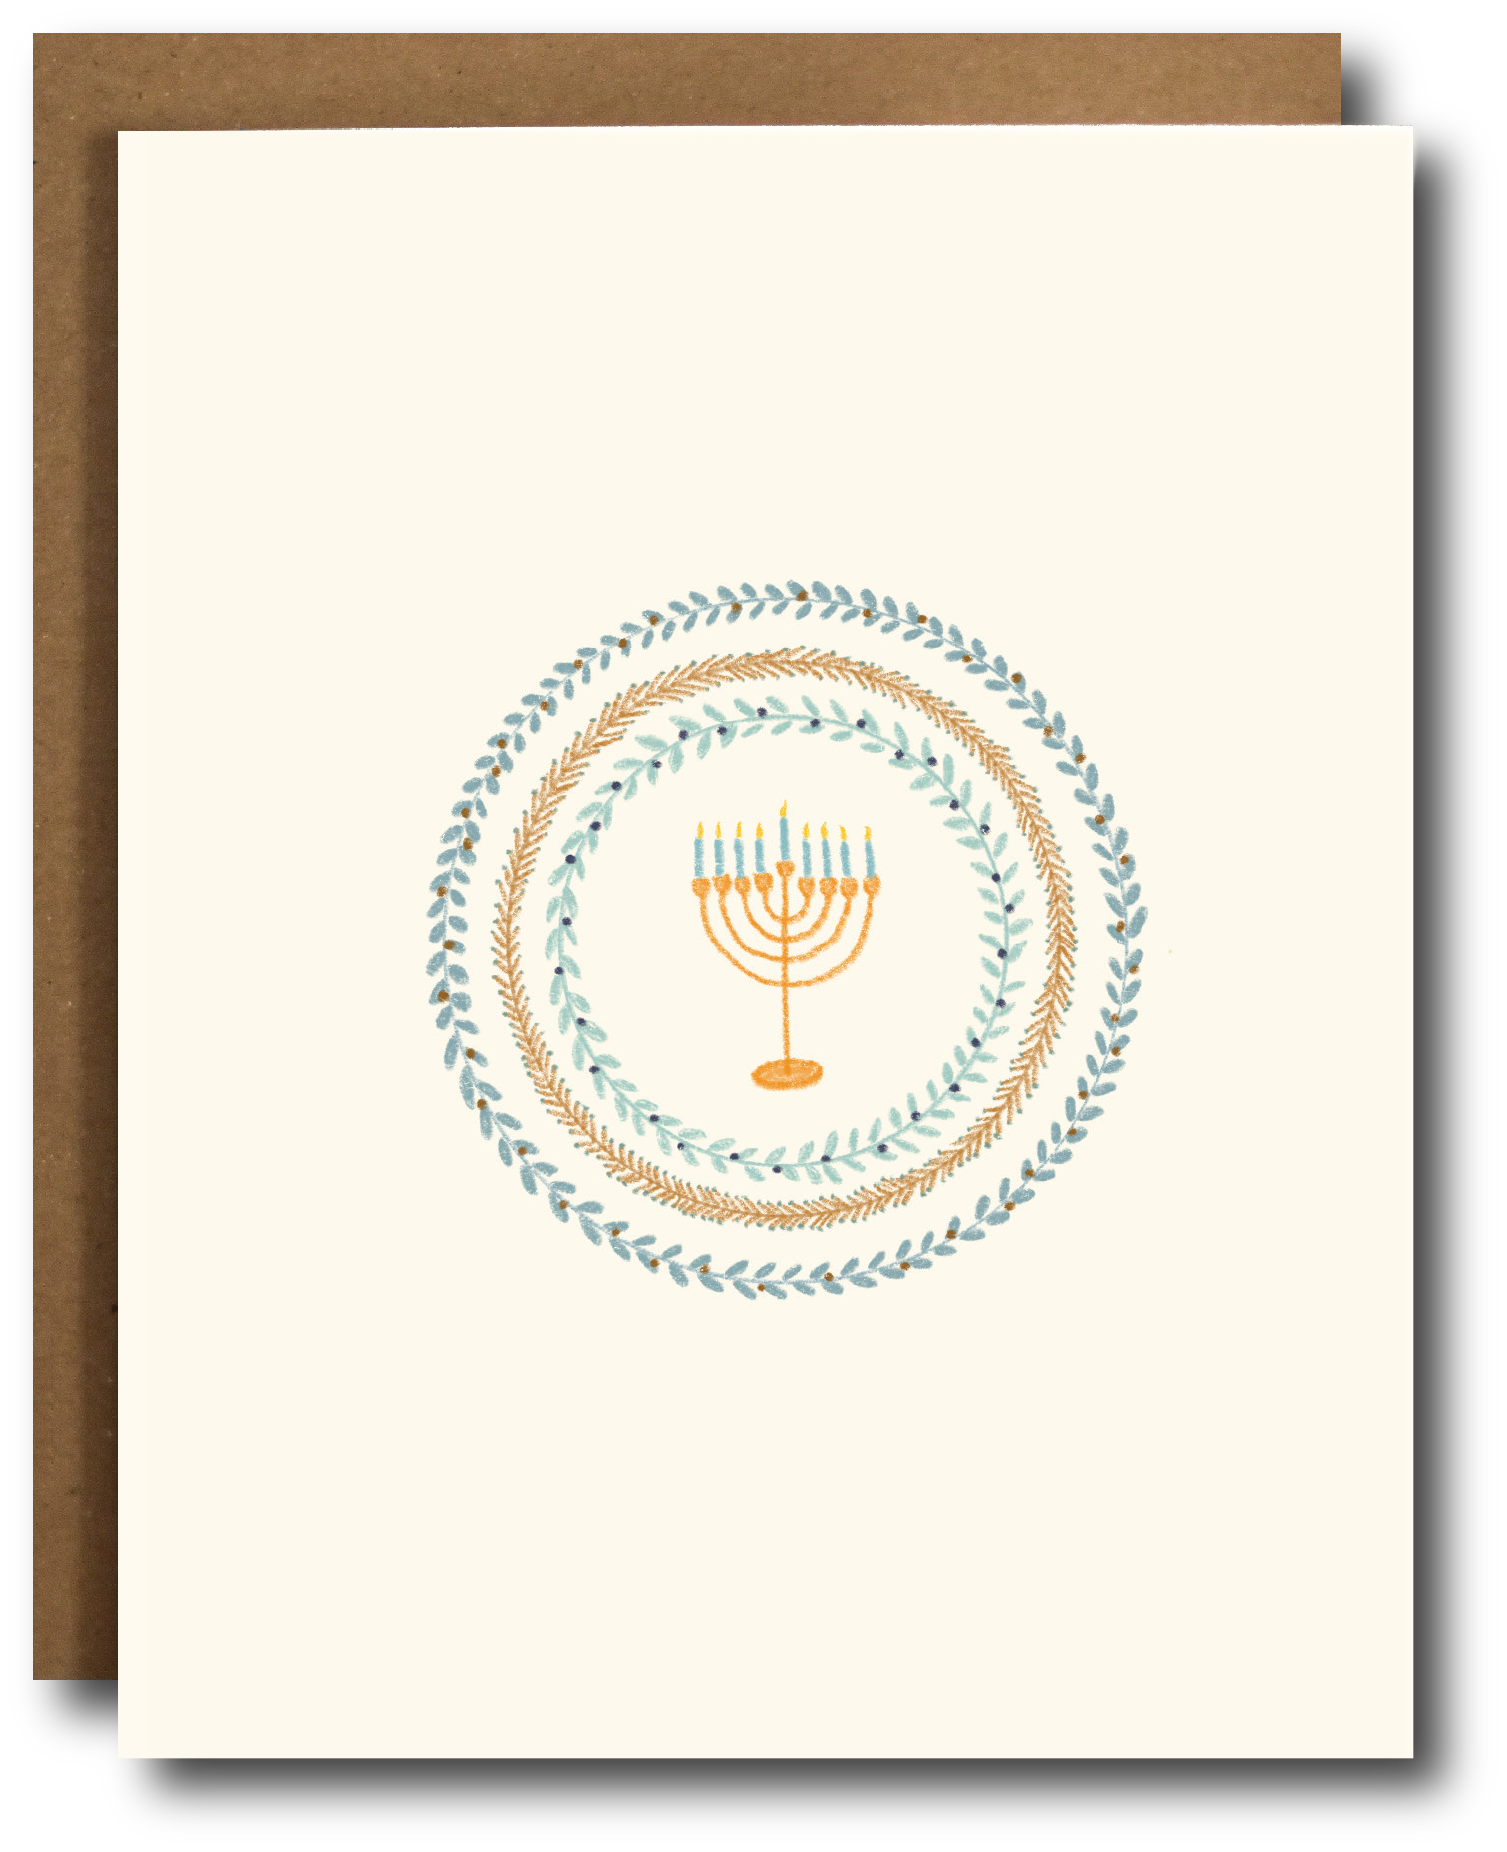 Menorah Hanukkah Card